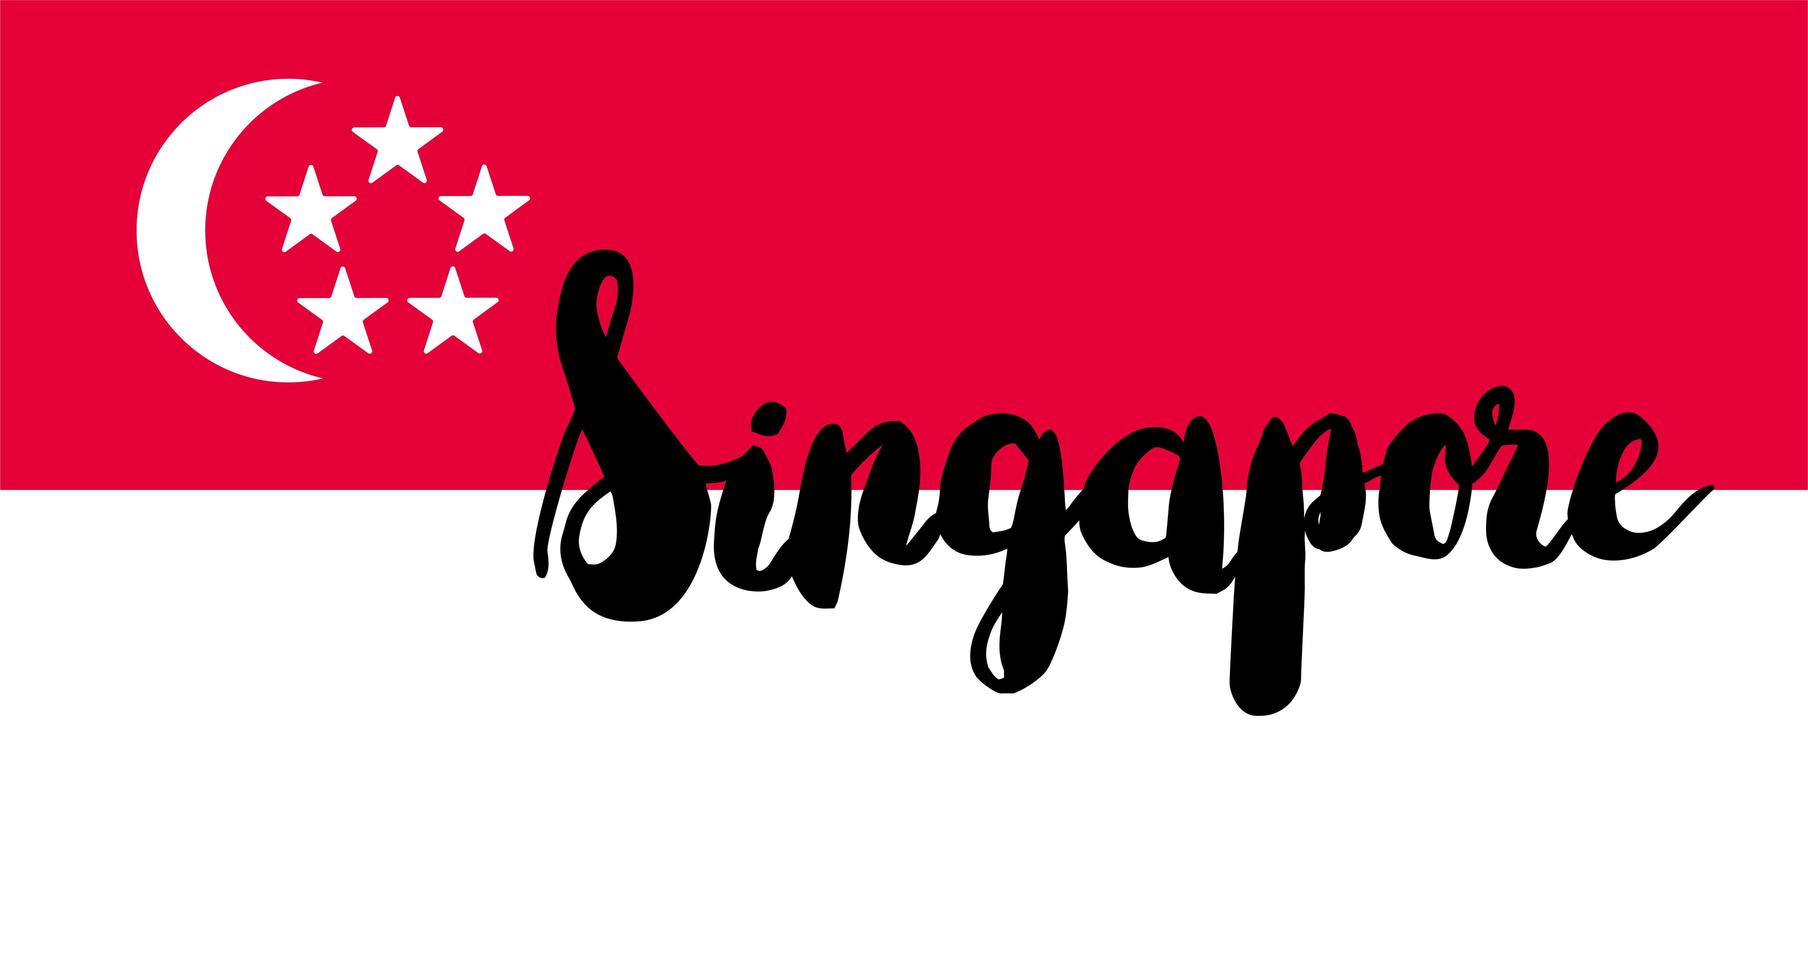 Chương trình học bổng học đại học tại Singapore năm 2022